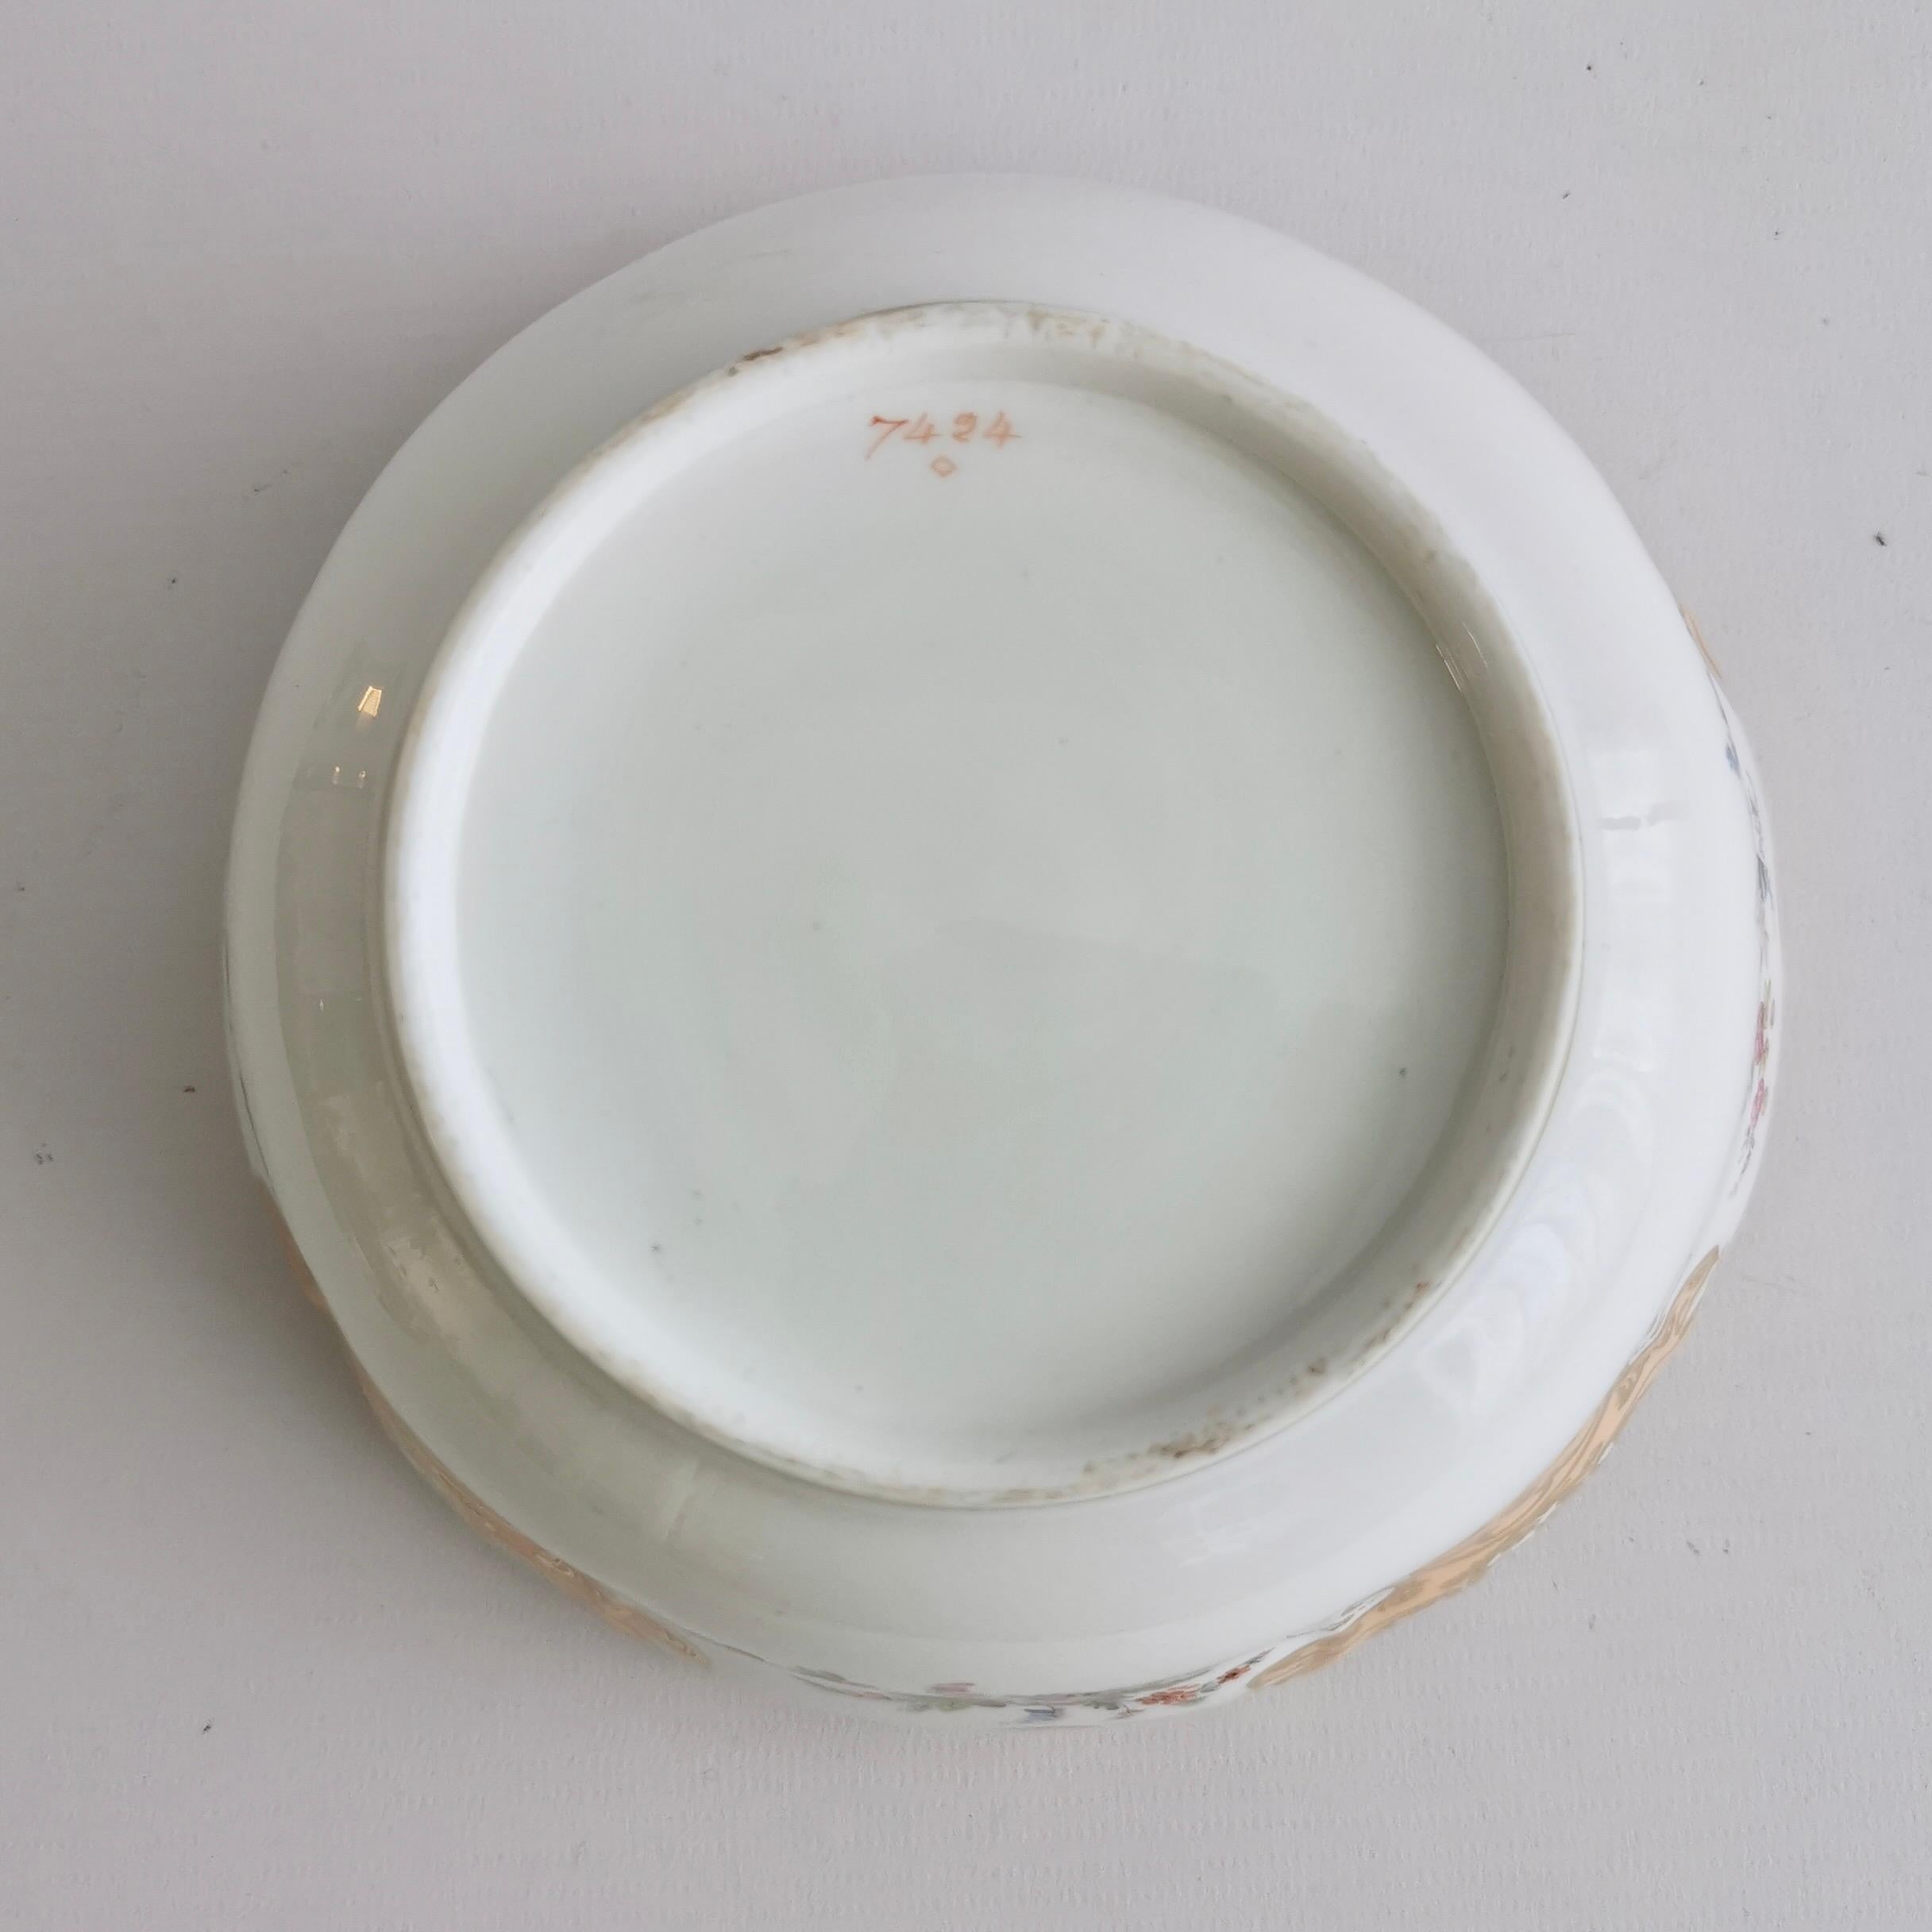 Minton Porcelain Slop Bowl, Apricot Orange Ground, Gilt and Flowers, ca 1845 10